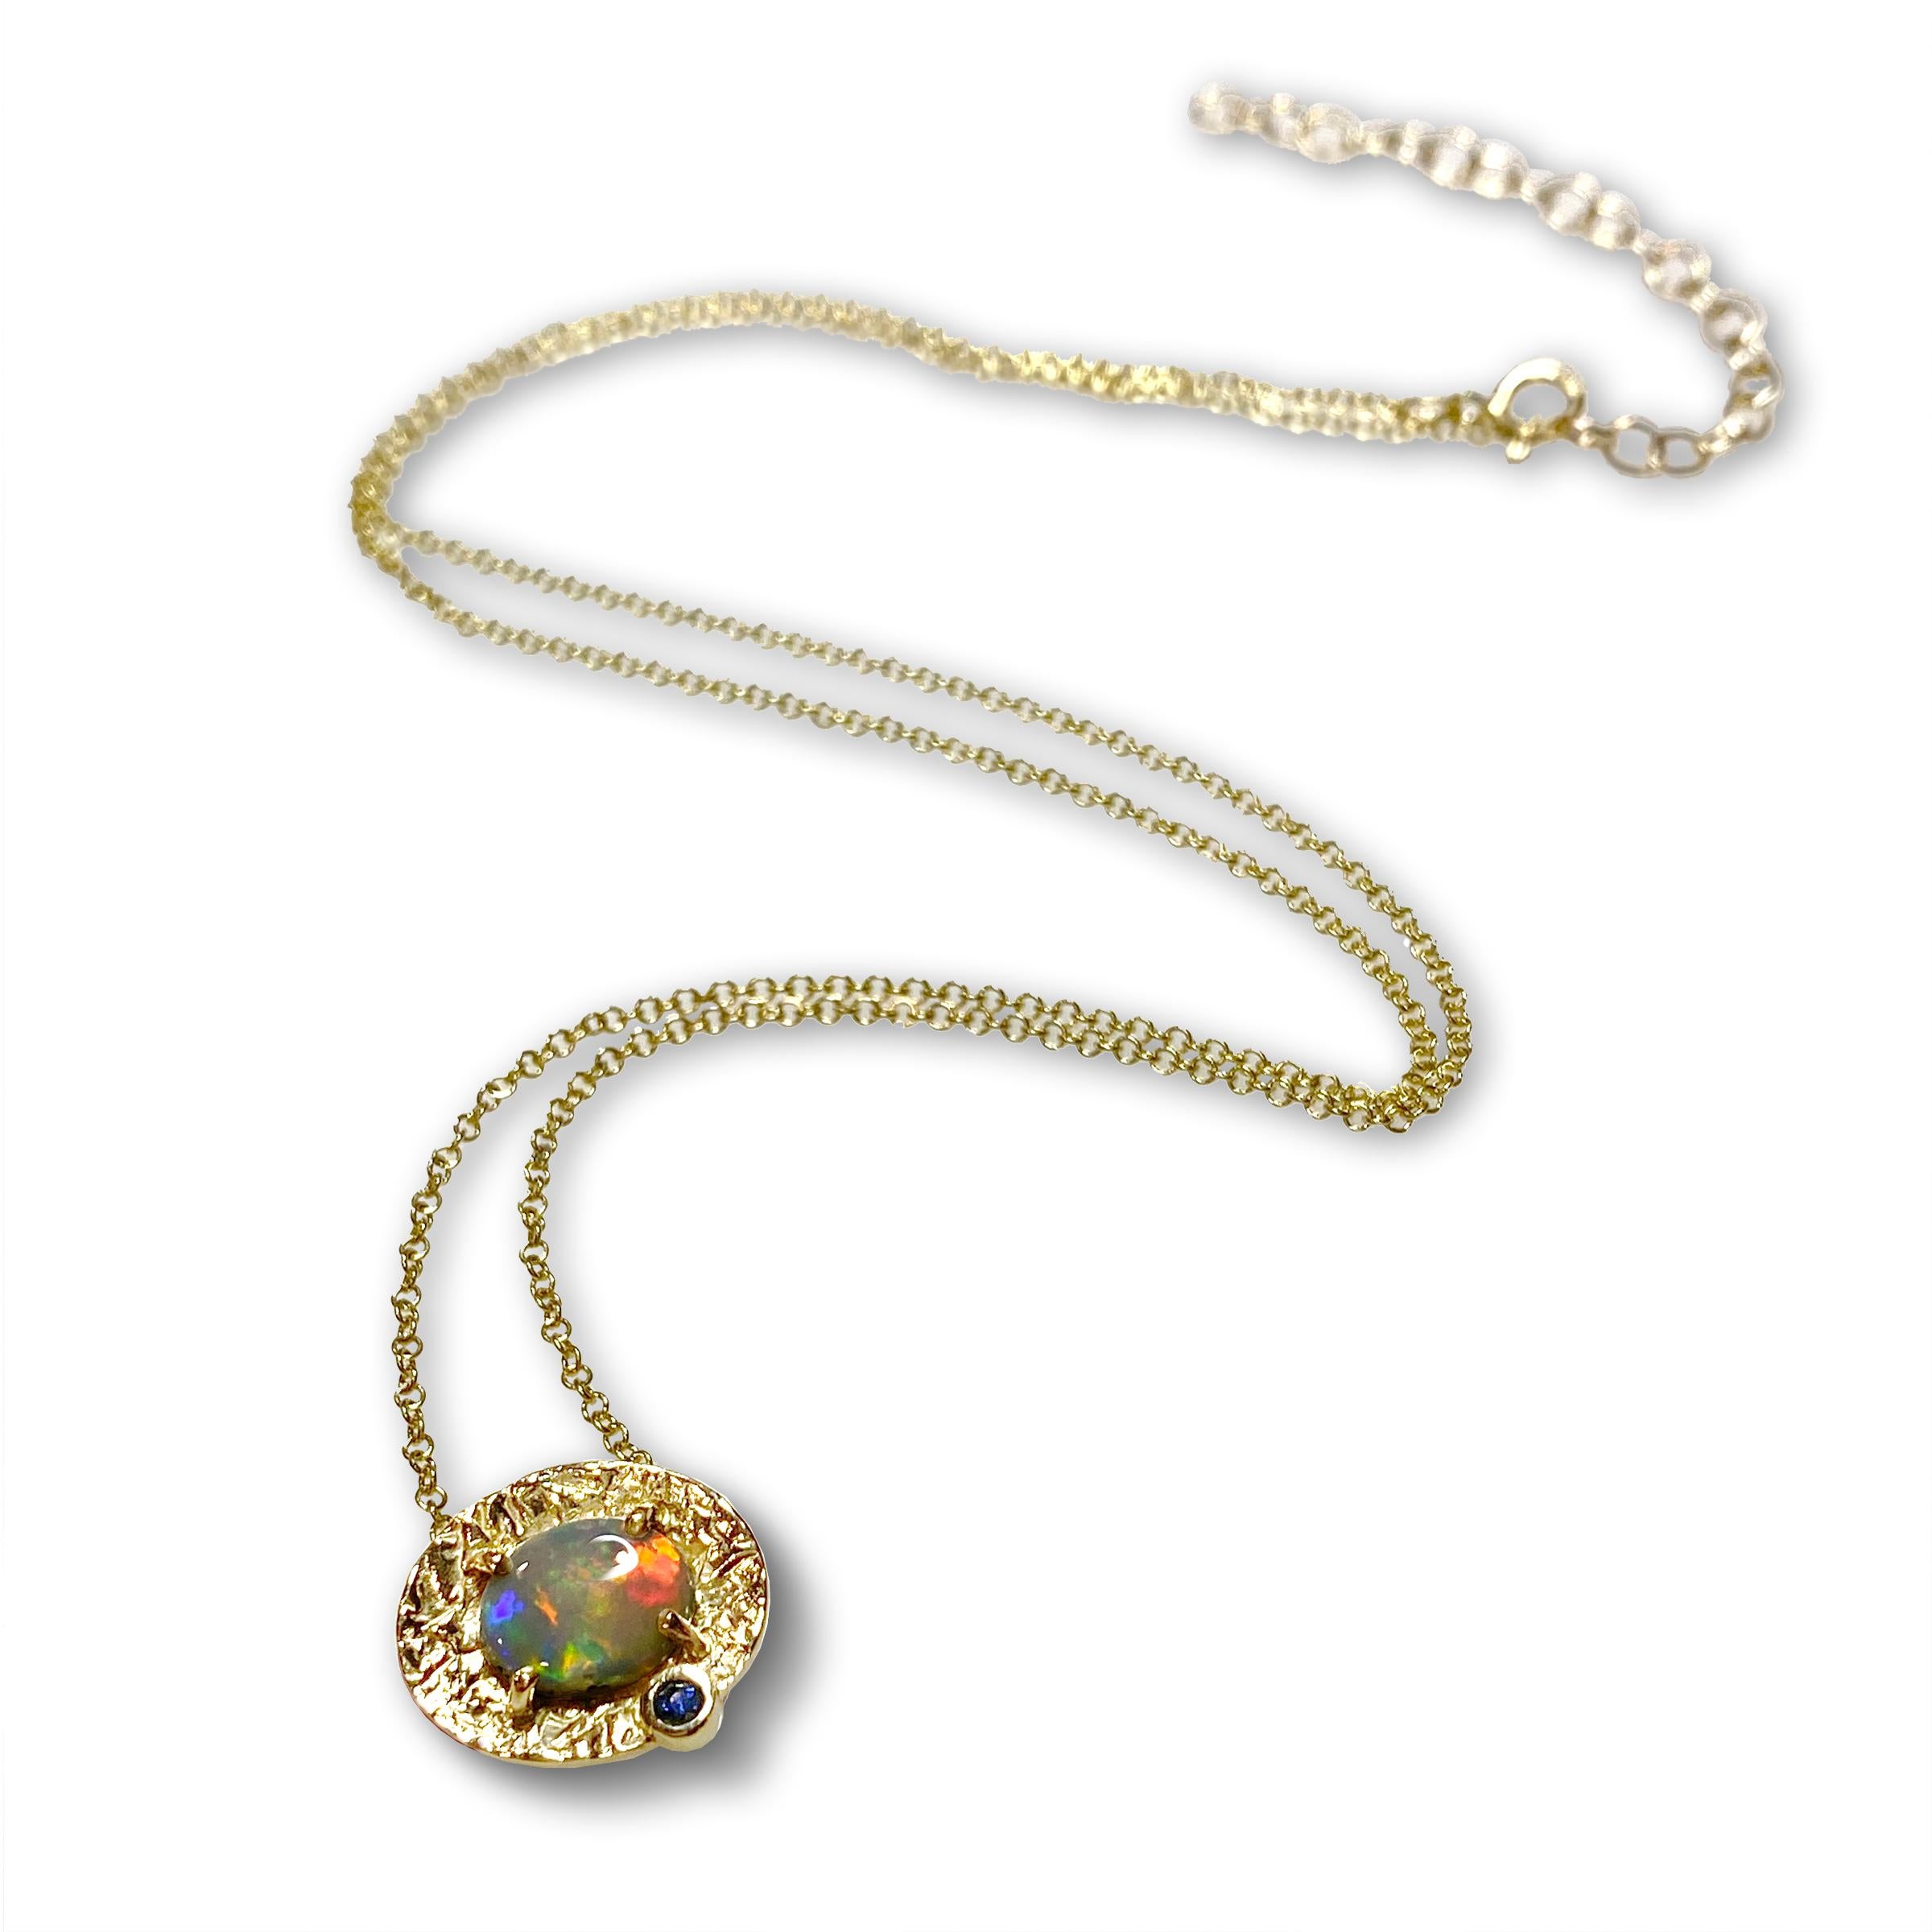 Le collier unique Petite Marigold de Keiko Mita est fabriqué à la main à partir d'une opale australienne multicolore (0,69 carats) sertie dans une monture texturée en or jaune 14 carats, rehaussée d'un saphir bleu. Cette magnifique opale, qui